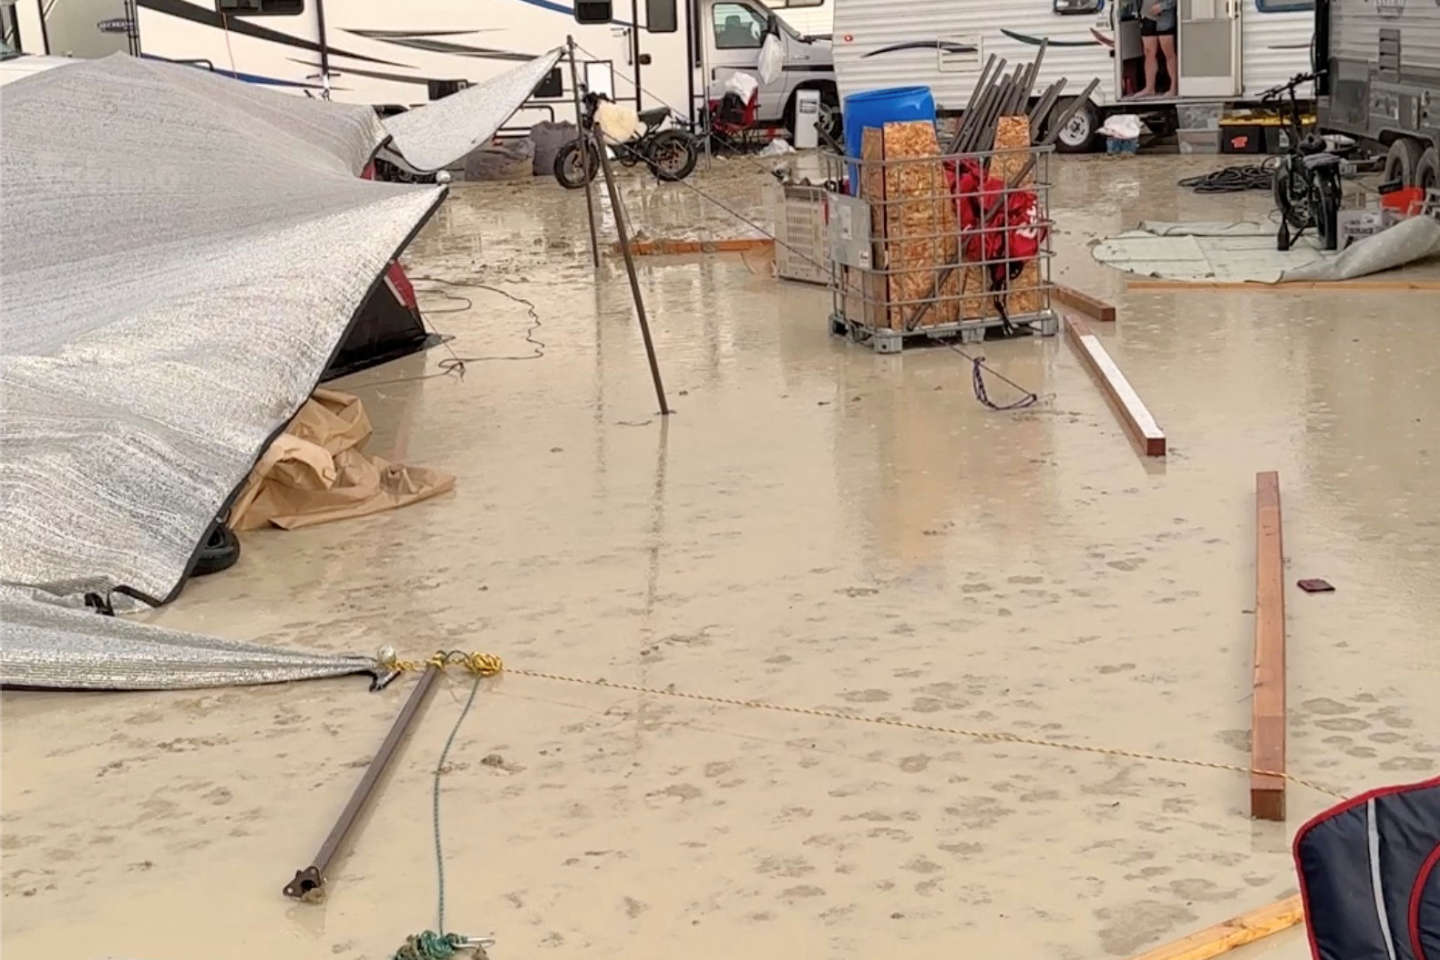 Le festival du Burning Man interrompu en raison de fortes pluies, les festivaliers bloqués sur place